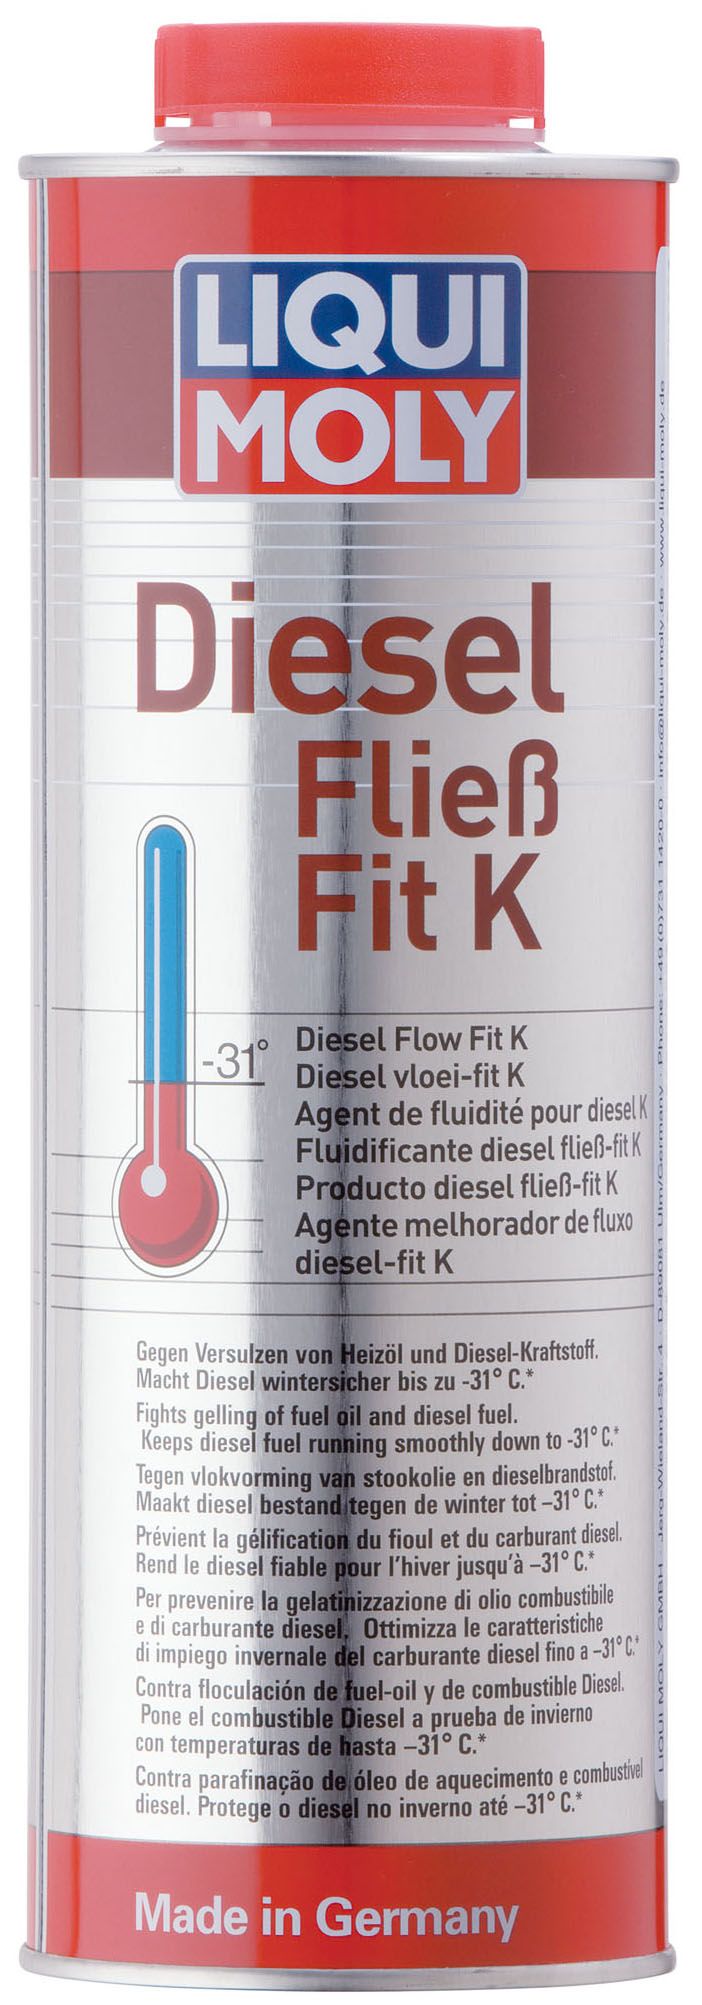 Diesel Fließ-Fit - Diesel Fließ-Fit